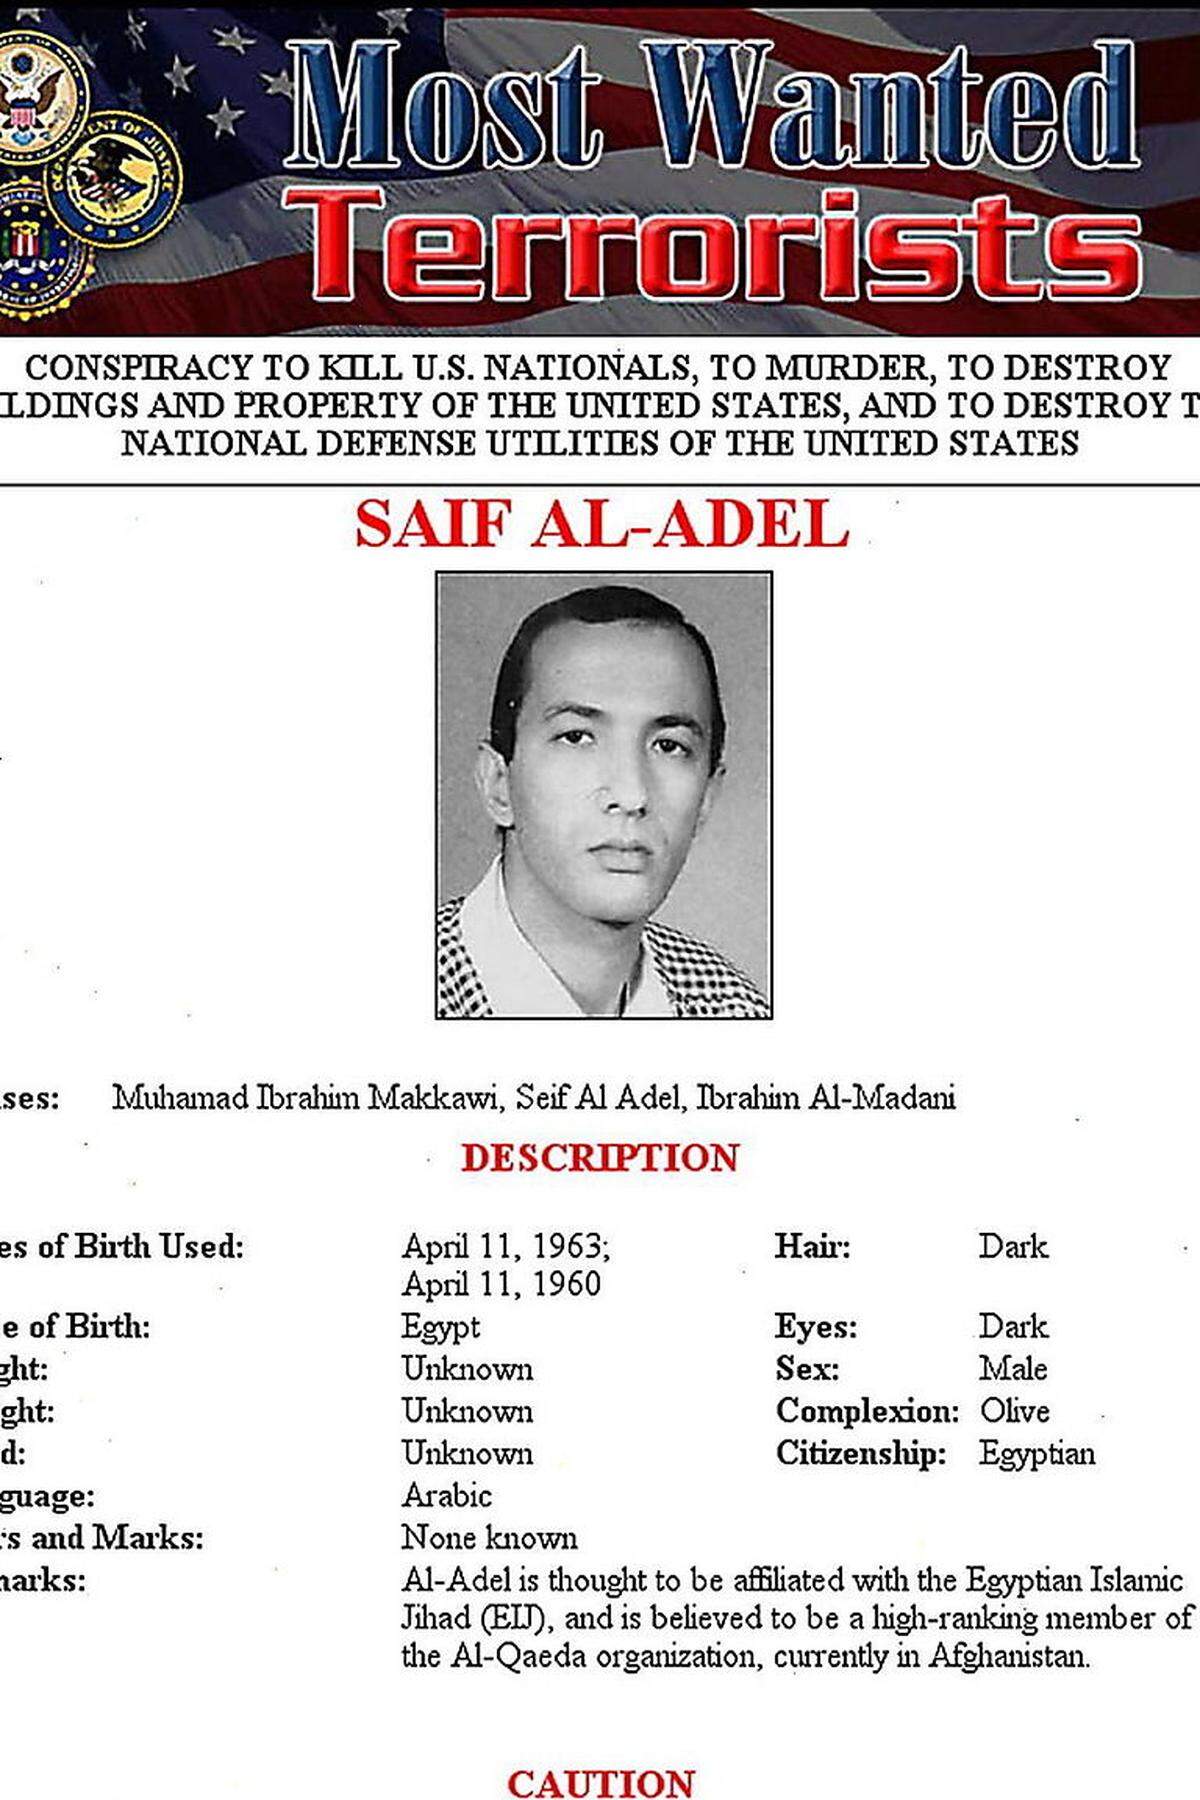 Neben al-Libi suchen die USA noch andere, die in diese Attentate verstrickt waren. Einer davon ist Saif al-Adel. Der Ägypter gehört zu den Köpfen al-Qaidas. Gerüchten zufolge floh er aus Afghanistan in den Iran und wurde dort unter Hausarrest gestellt. 2010 soll er aber gegen einen gekidnappten iranischen Diplomaten ausgetauscht worden und nach Pakistan gegangen sein. Er dürfte sich in den pakistanischen Stammesgebieten an der Grenze zu Afghanistan aufhalten, in denen militante Gruppen das Sagen haben.